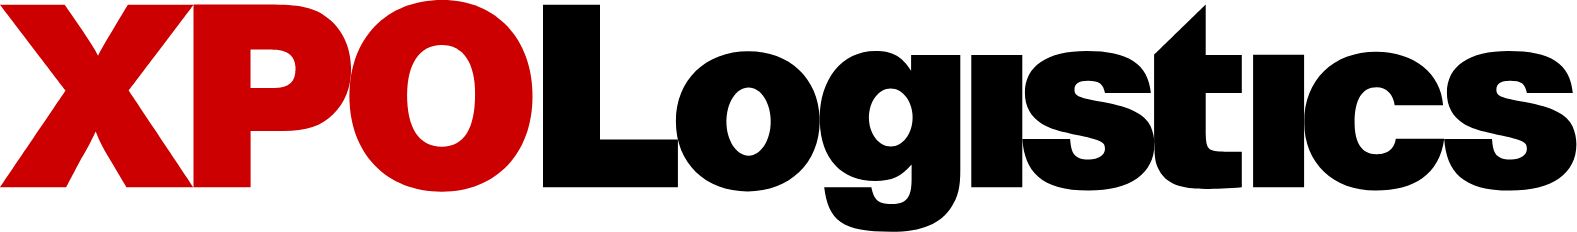 Logo de XPO Logistics aux formats PNG transparent et SVG vectorisé